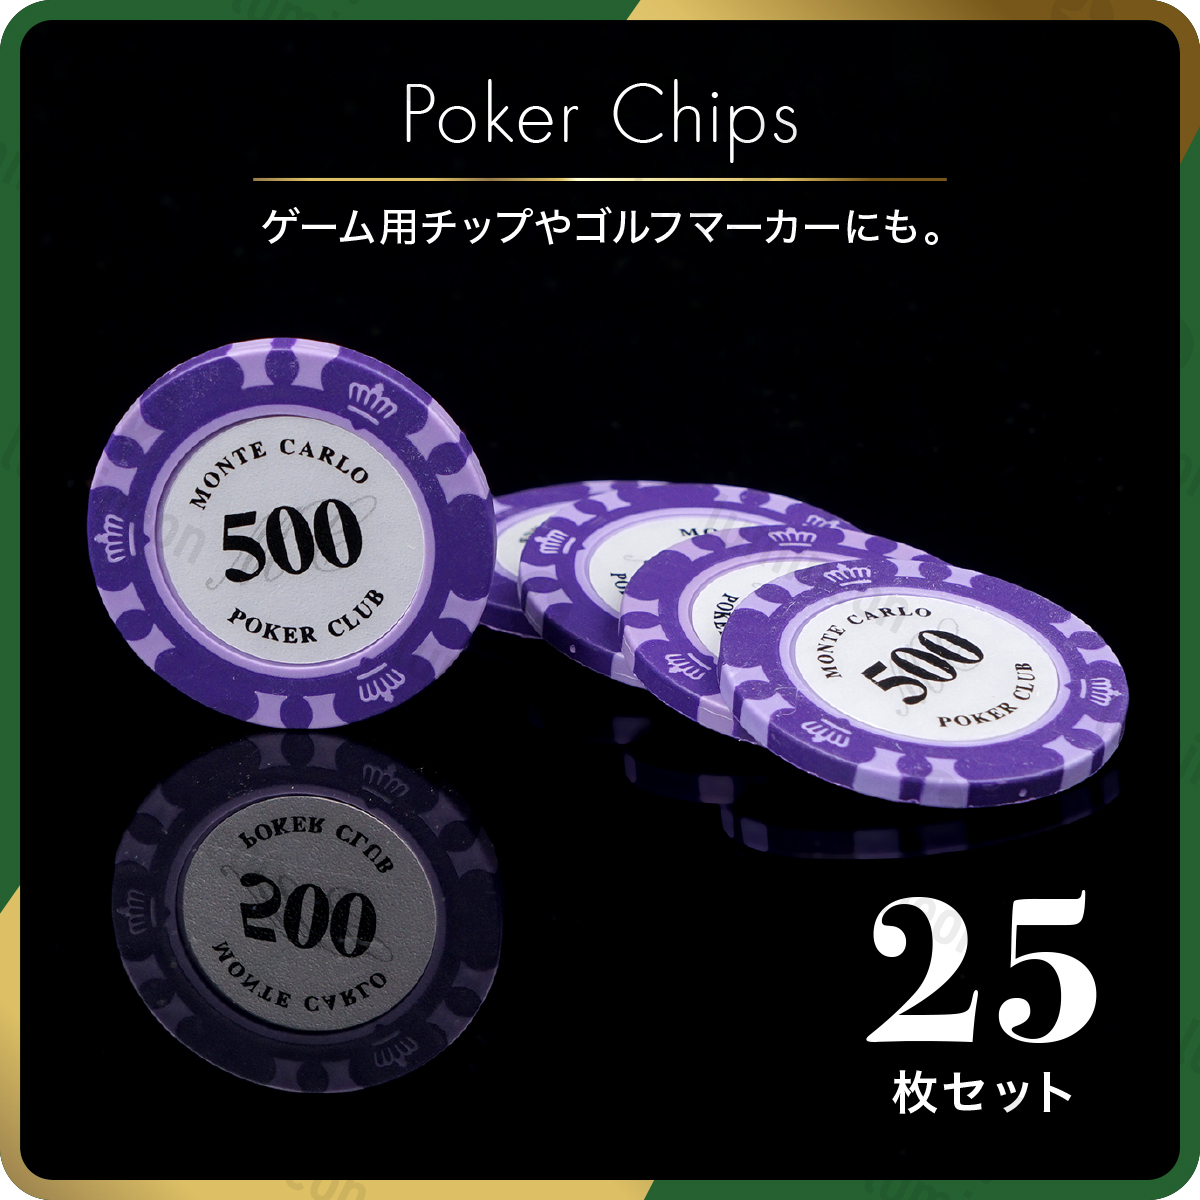 ポーカー チップ $500 セット チップ カジノ コイン ゴルフ マーカー ボール グリーン マグネット 用品 ゴルフ コンペ 景品 g121j 2の画像1